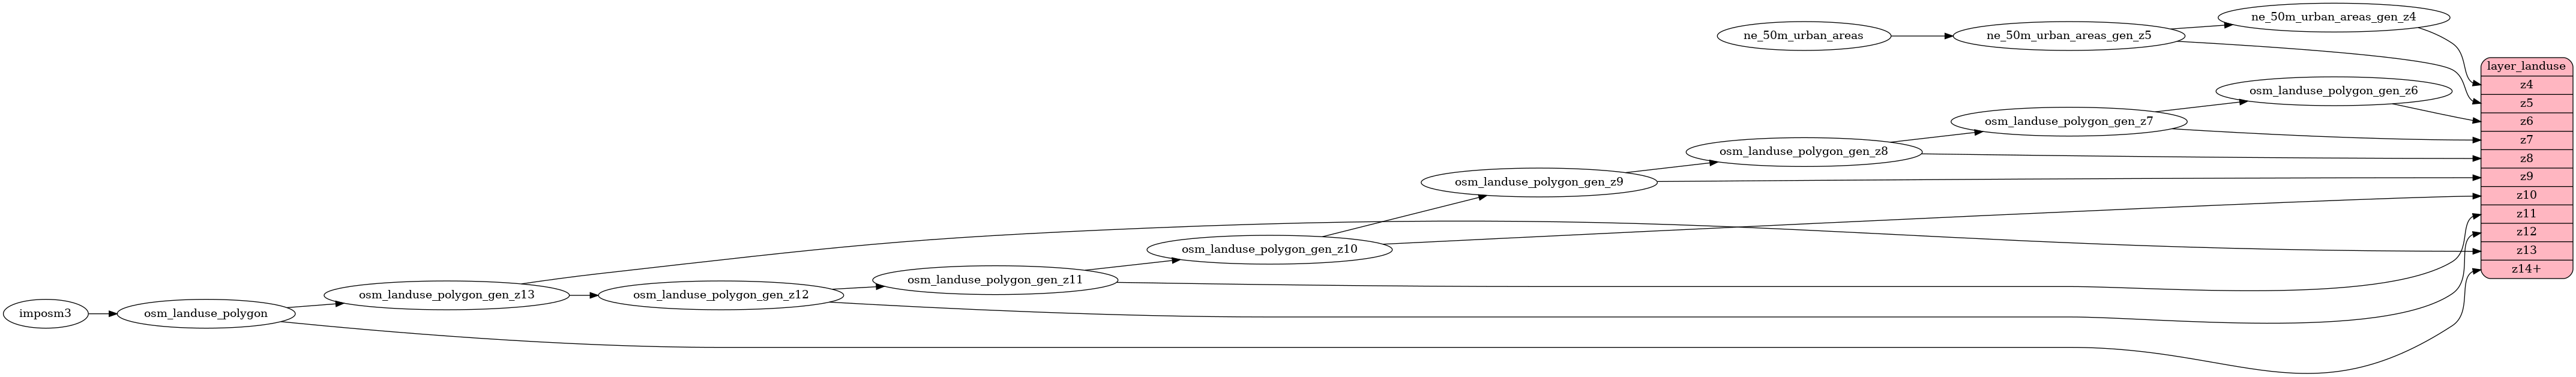 ETL diagram for landuse